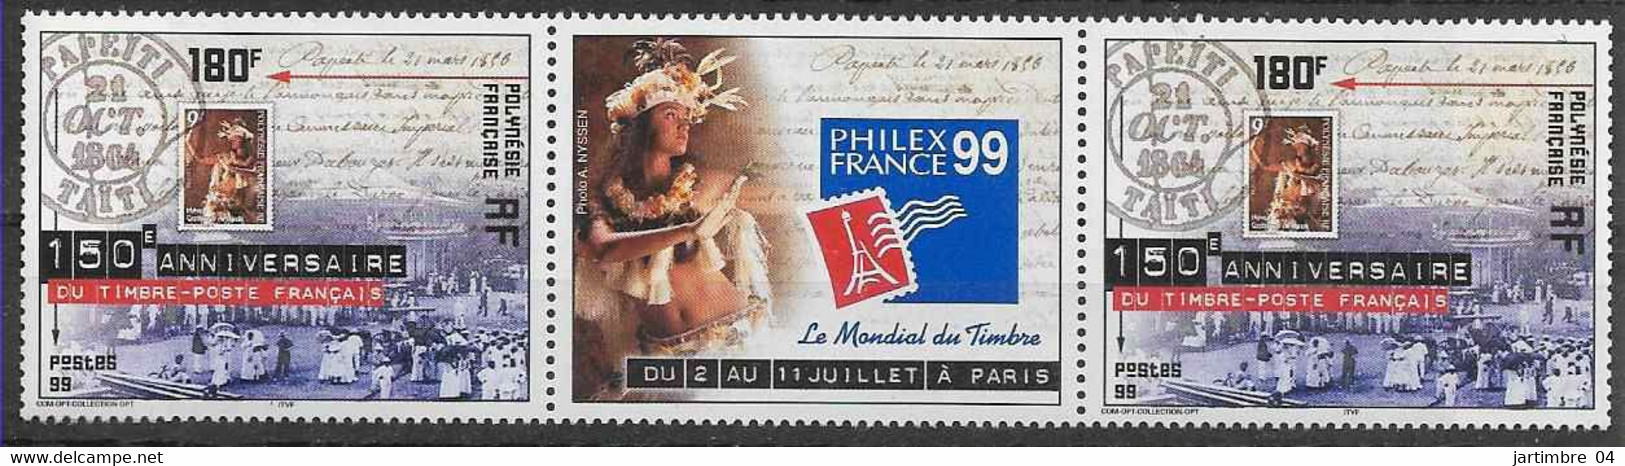 1999 POLYNESIE FRANCAISE 602** Philexfrance, Timbre Sur Timbre, Paire Avec Vignette - Nuovi